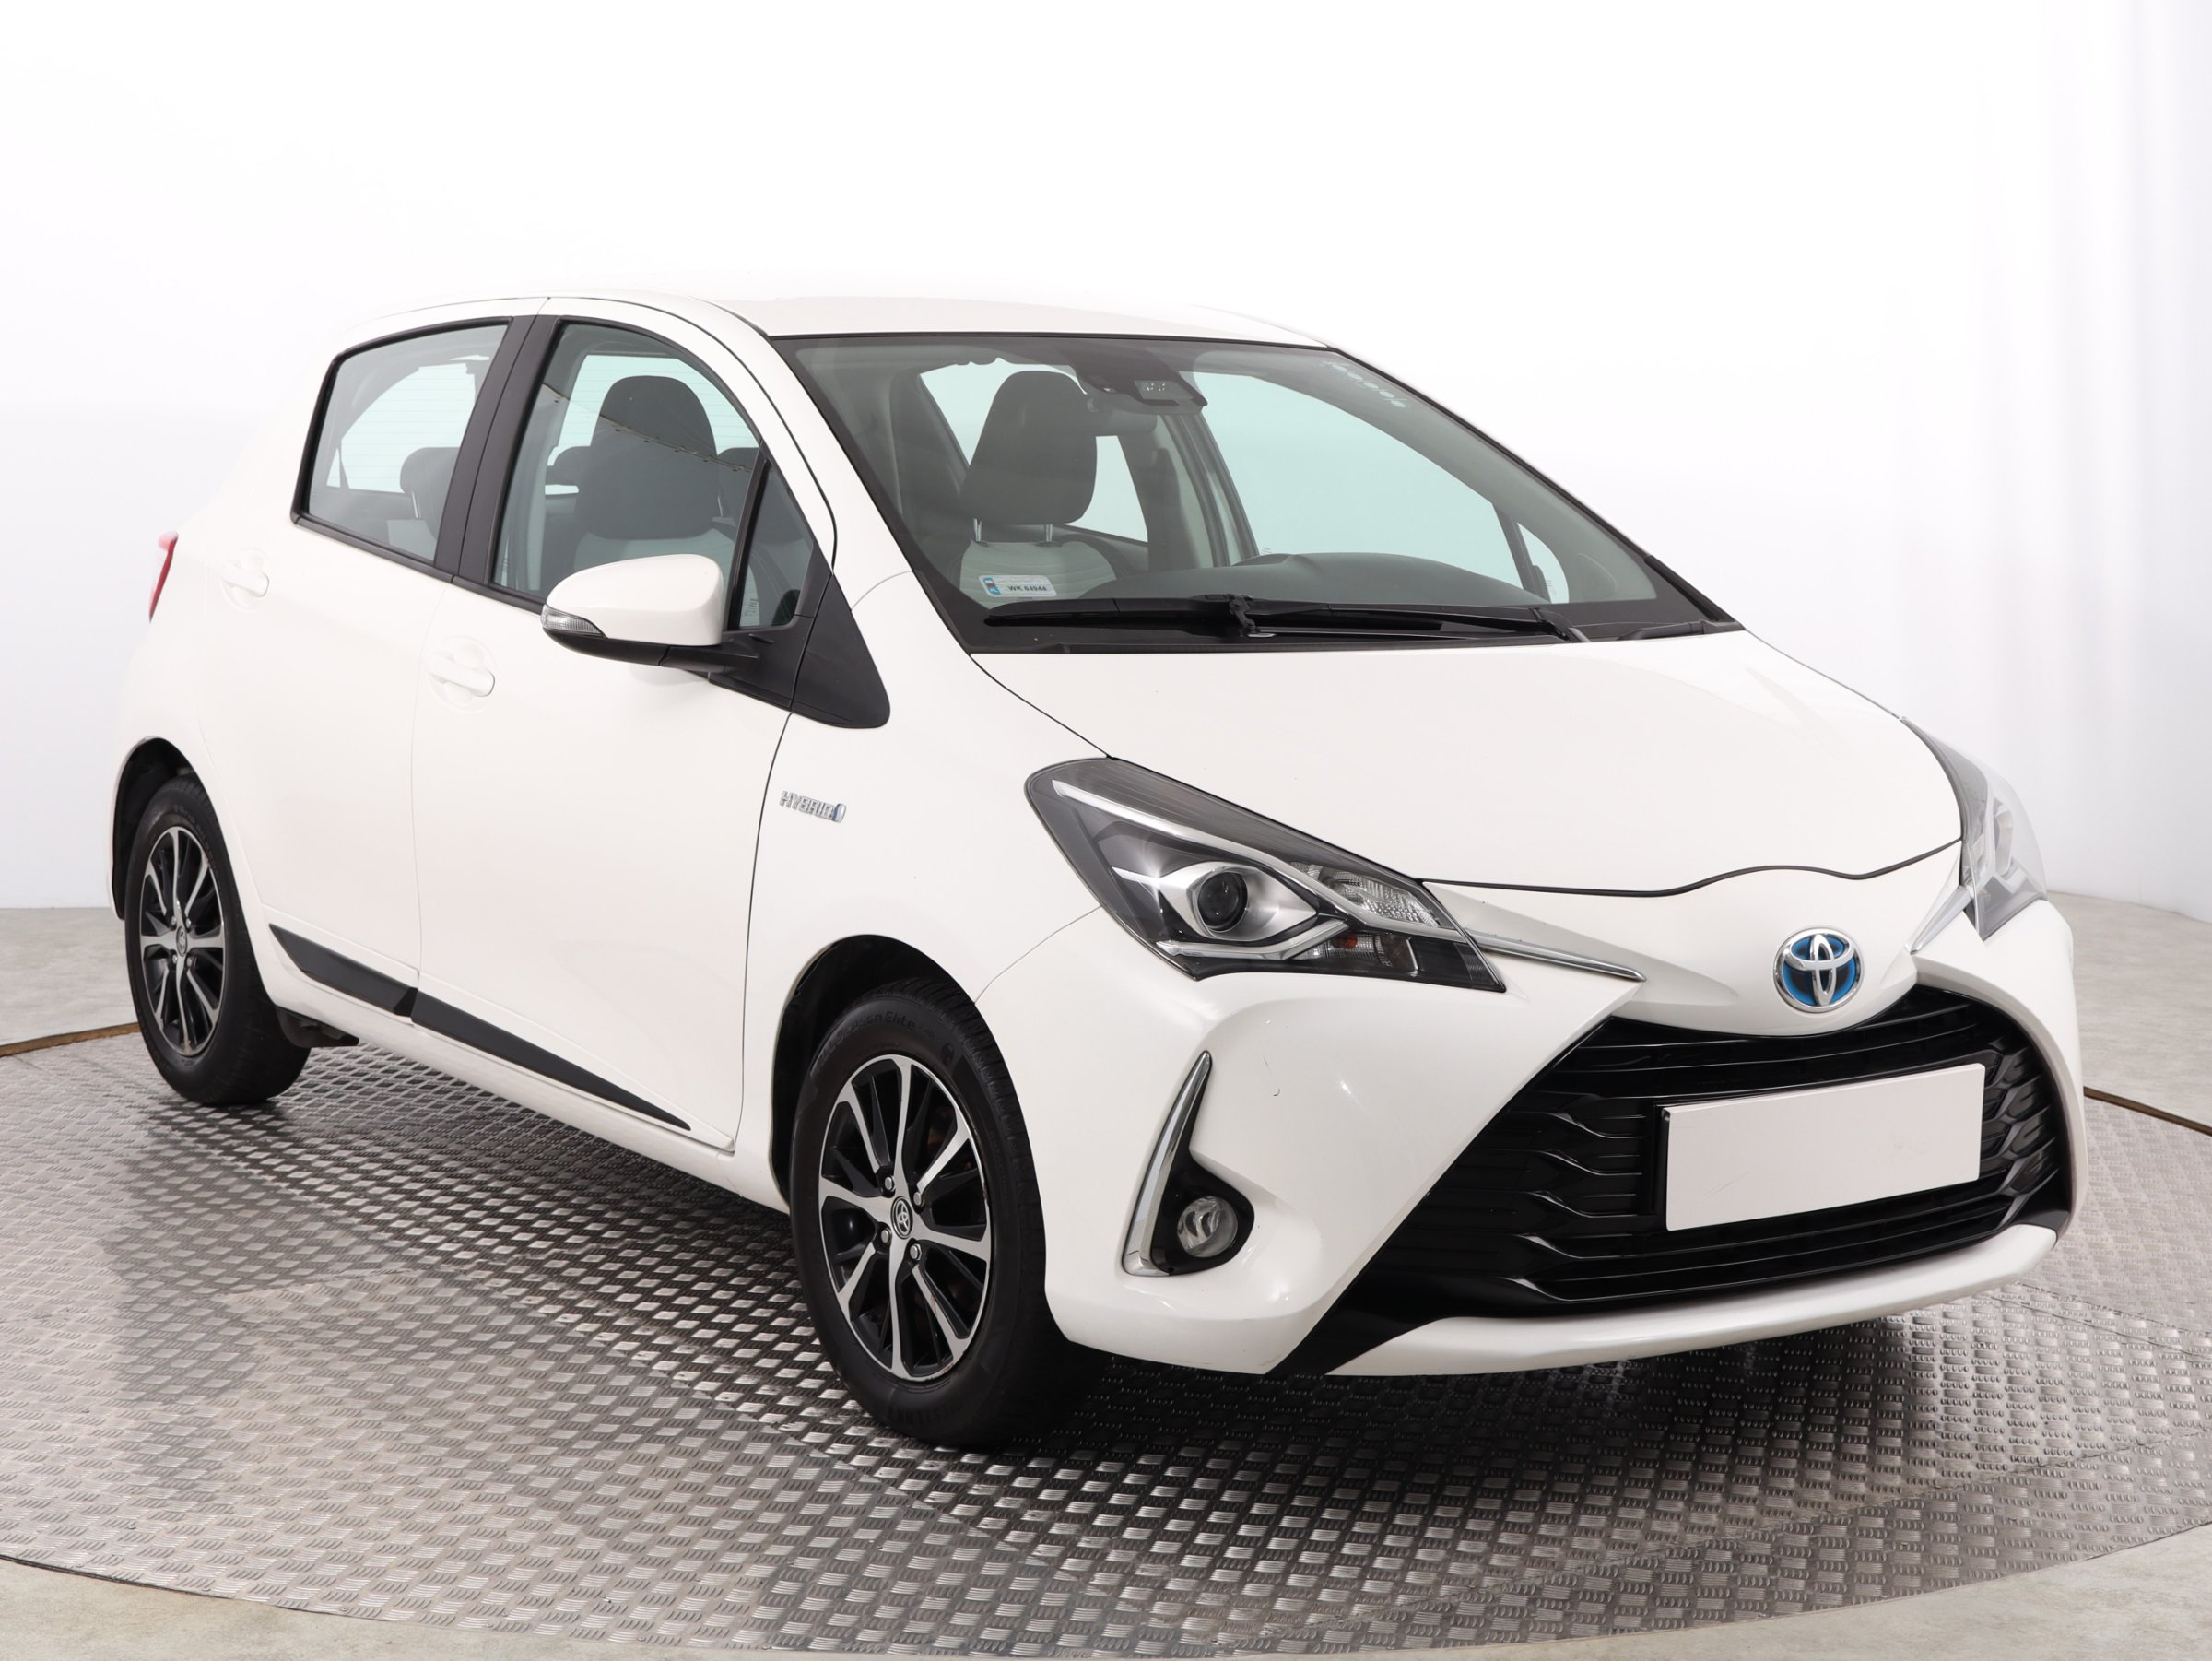 Toyota Yaris 1.5 VVT-i Hybrid Hatchback 2018 - 1